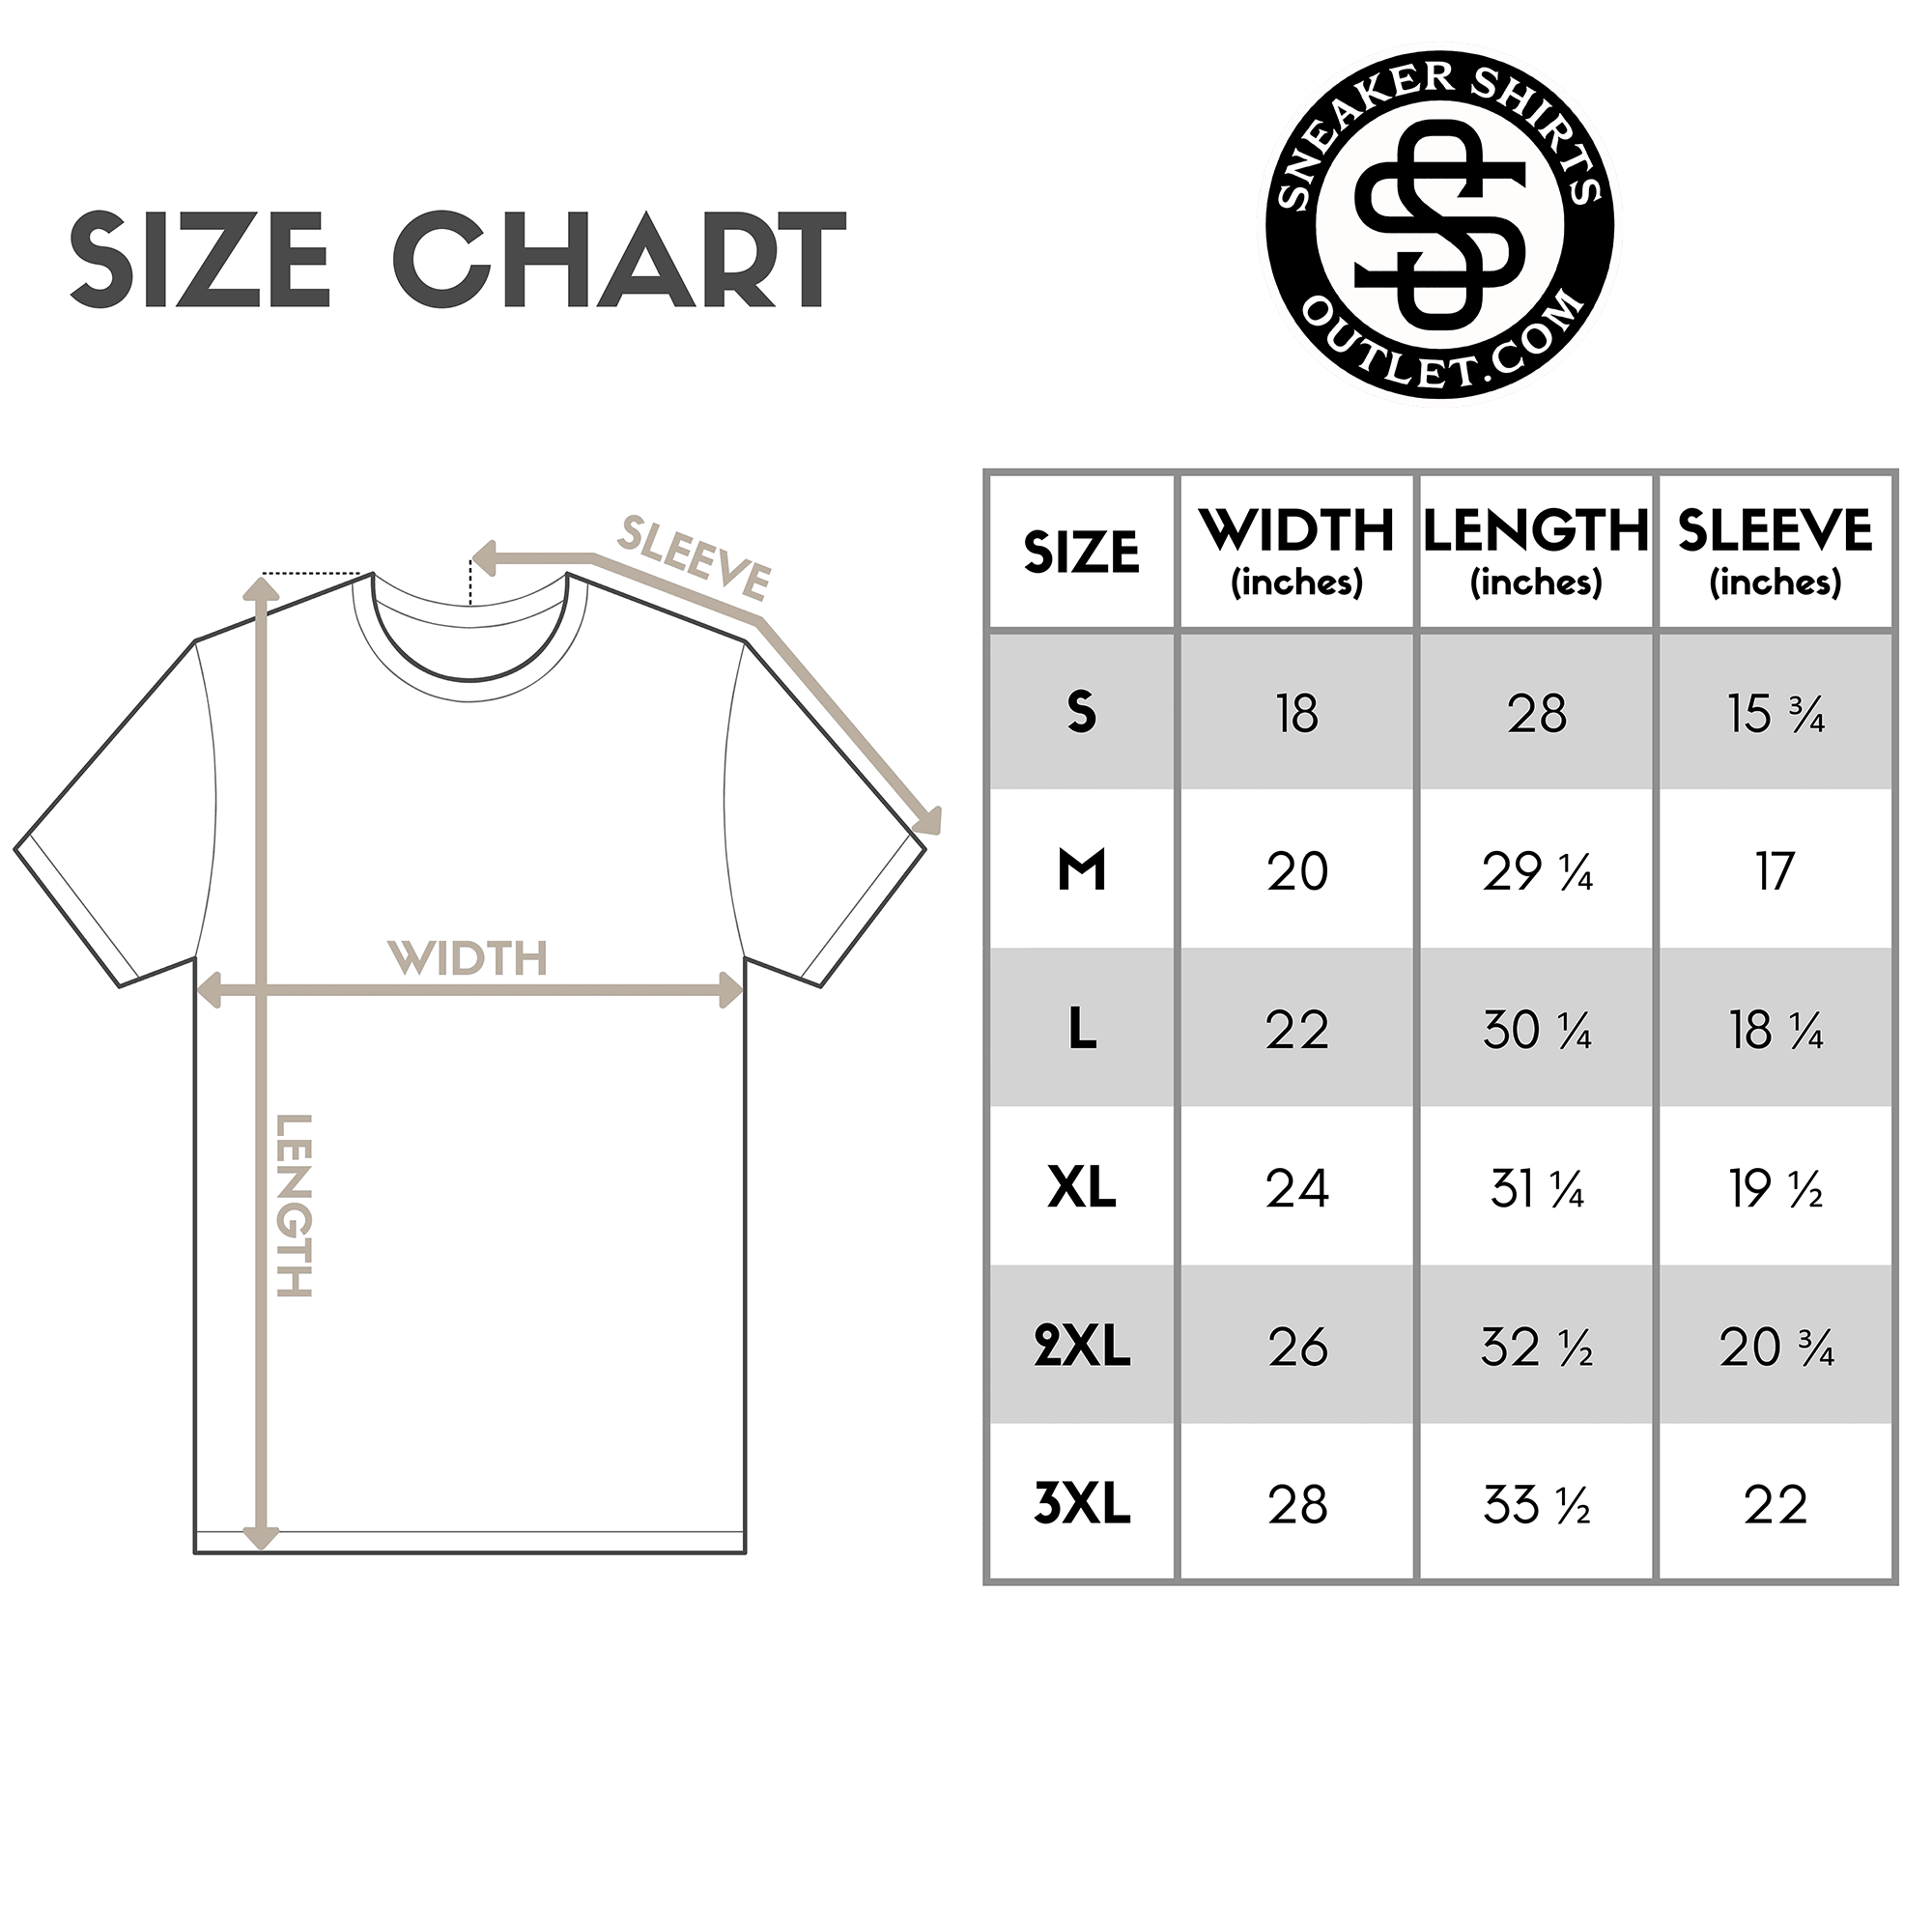 size chart for Lover Shirt Jordan 1s High OG Rebellionaire photo